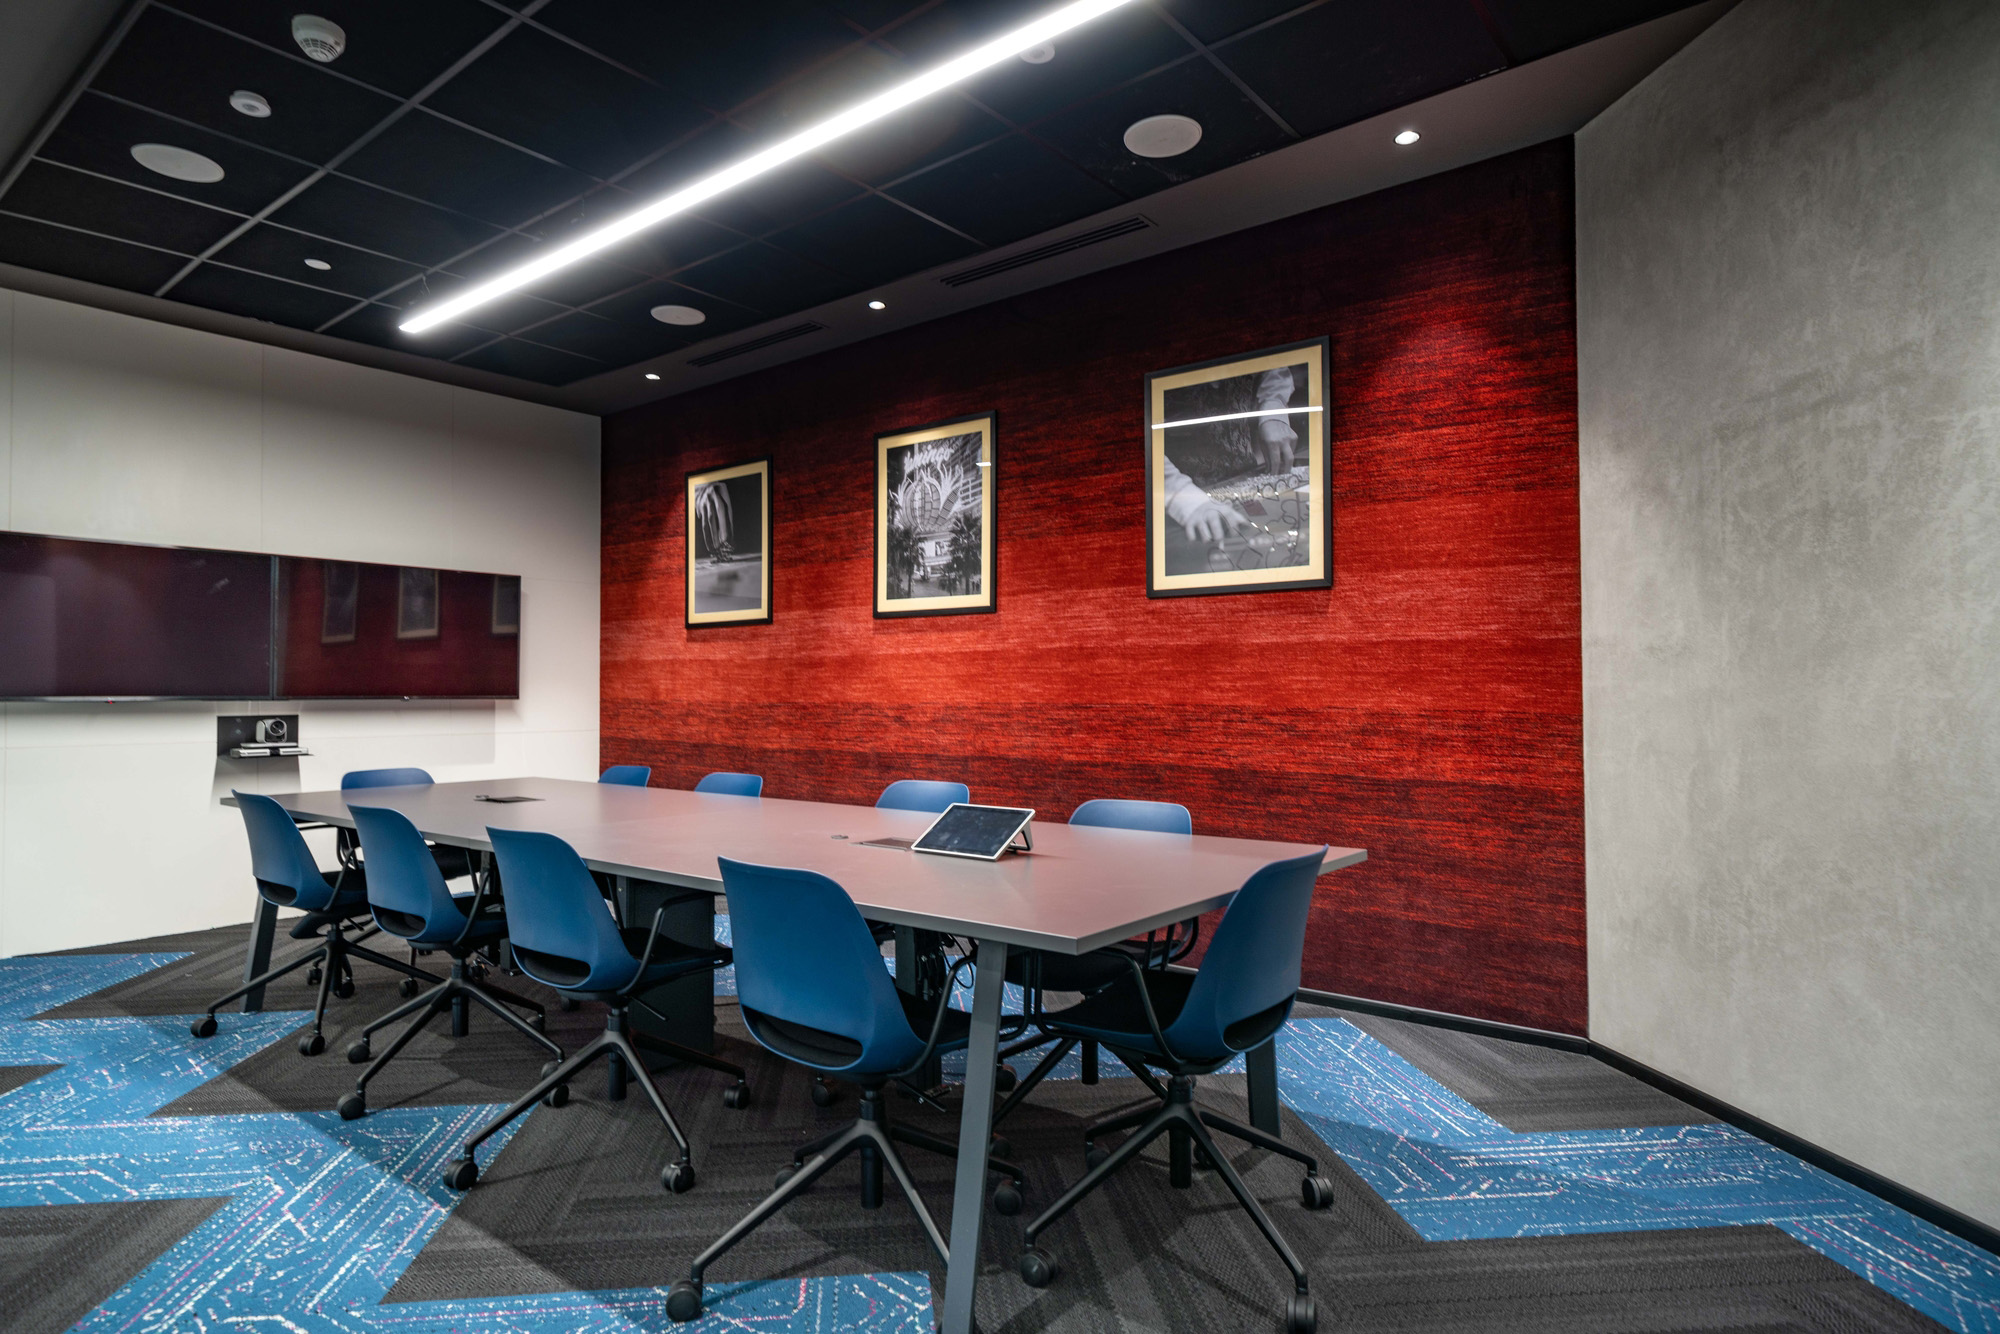 暗黑工业风金融公司办公空间会议室设计